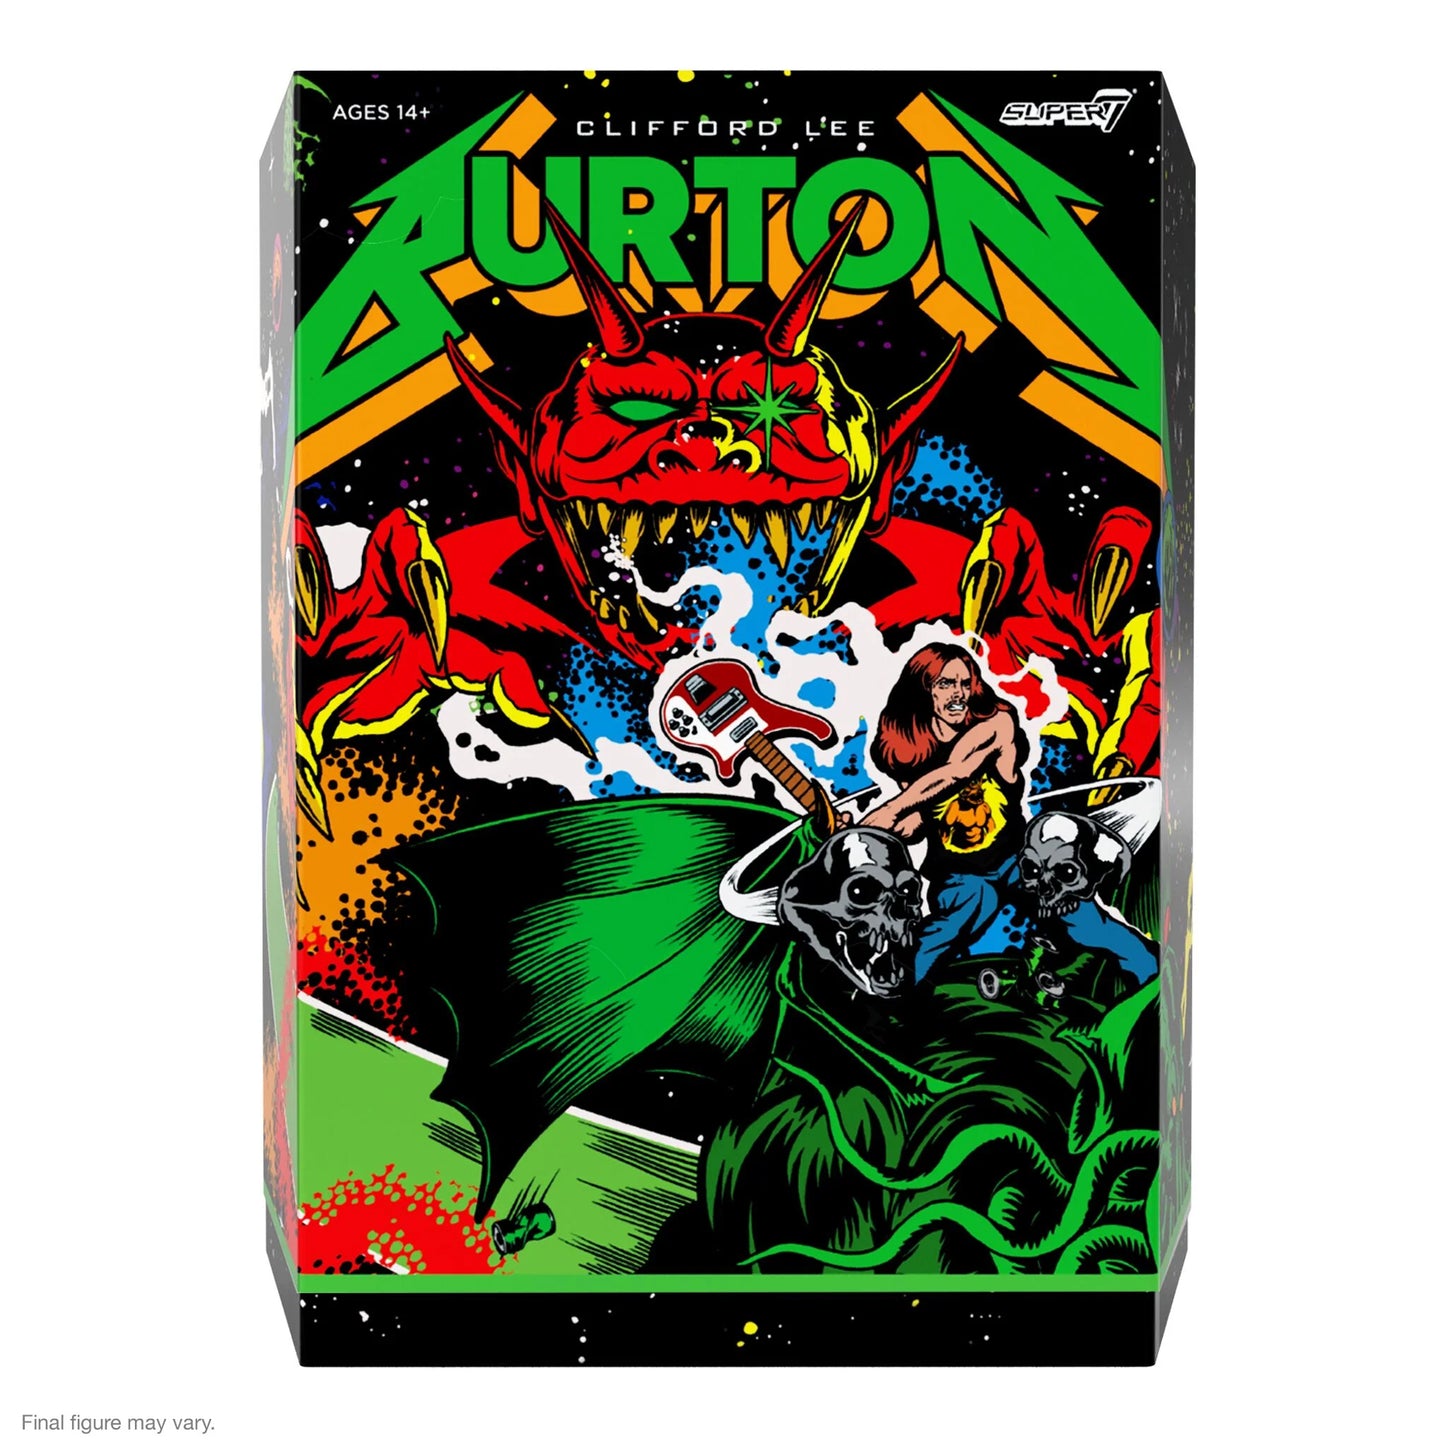 Super7 Ultimates Cliff Burton (Superhero Poster)